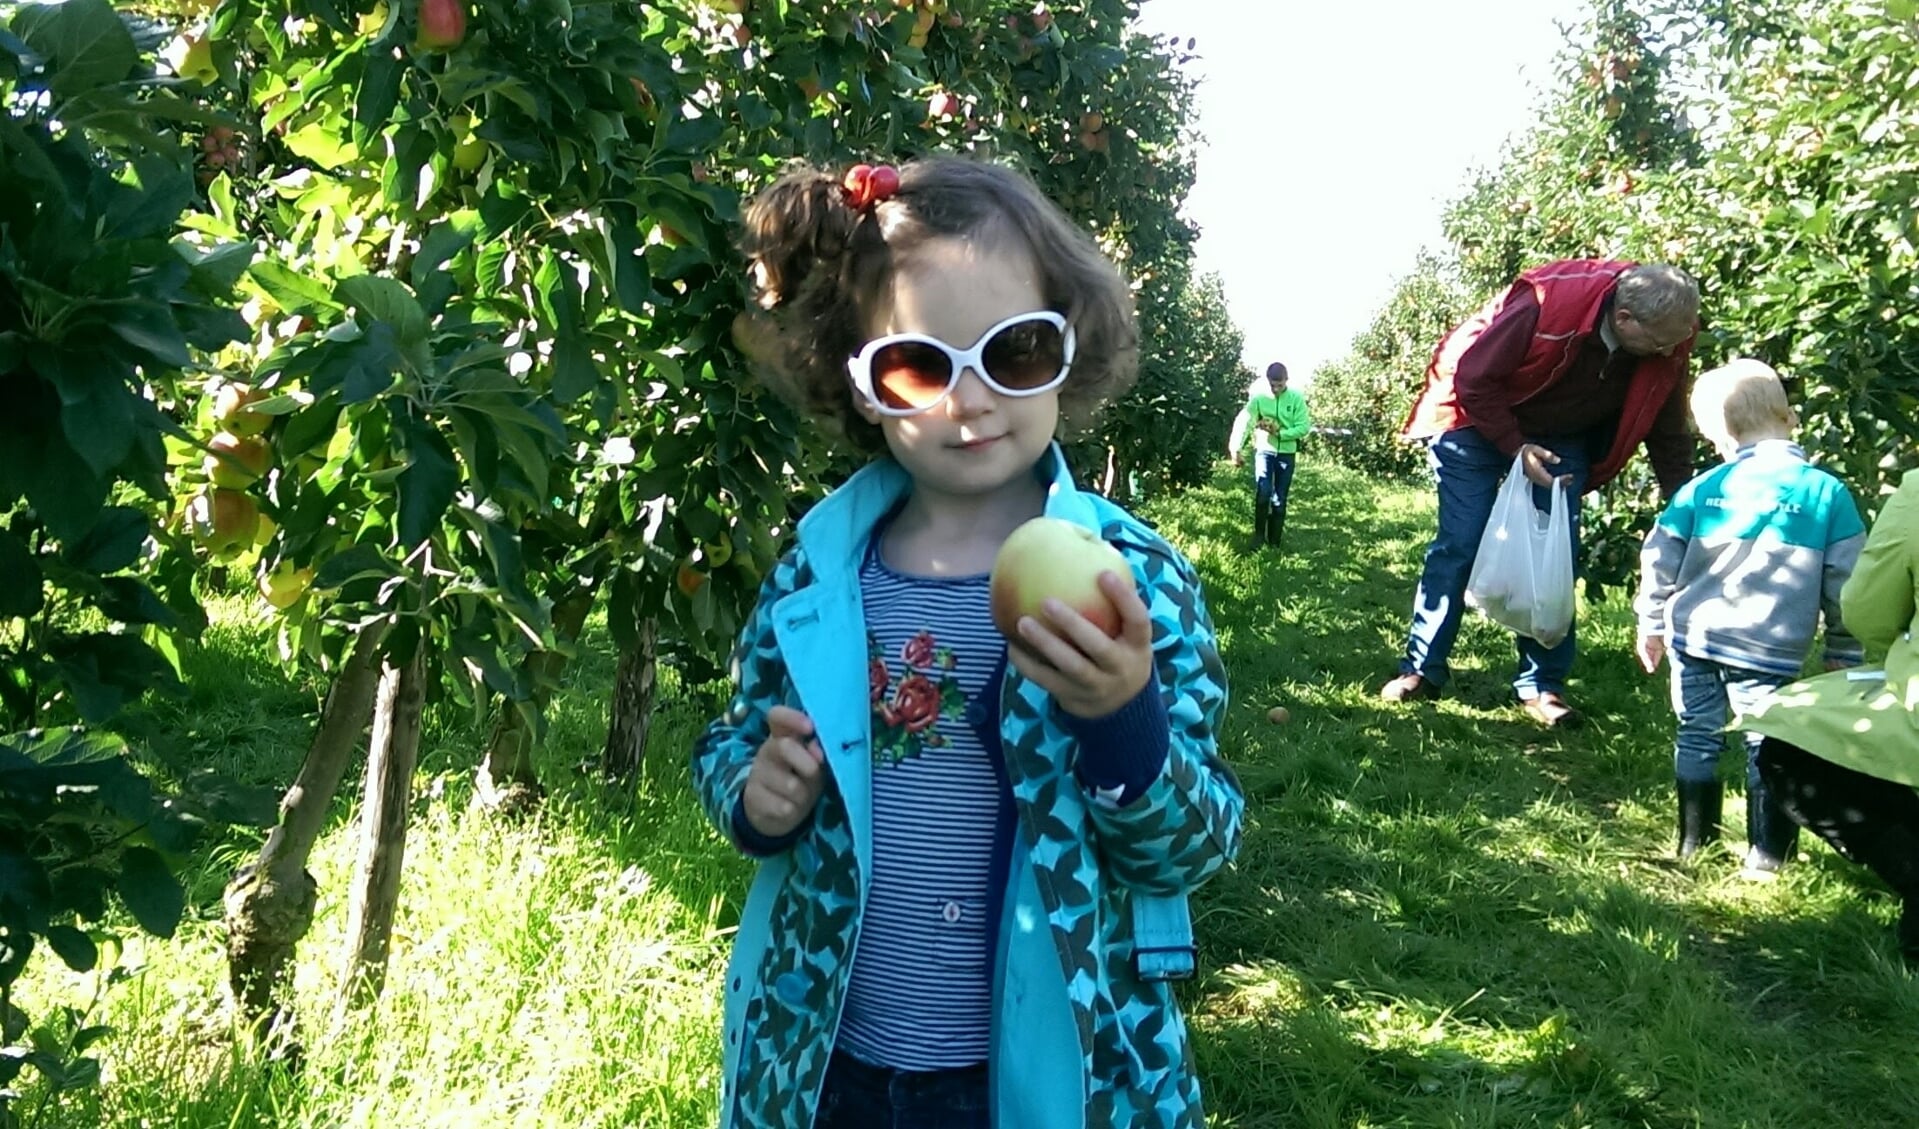 Fruit plukken is populair uitje met en voor kinderen. Foto: Monique Horstink